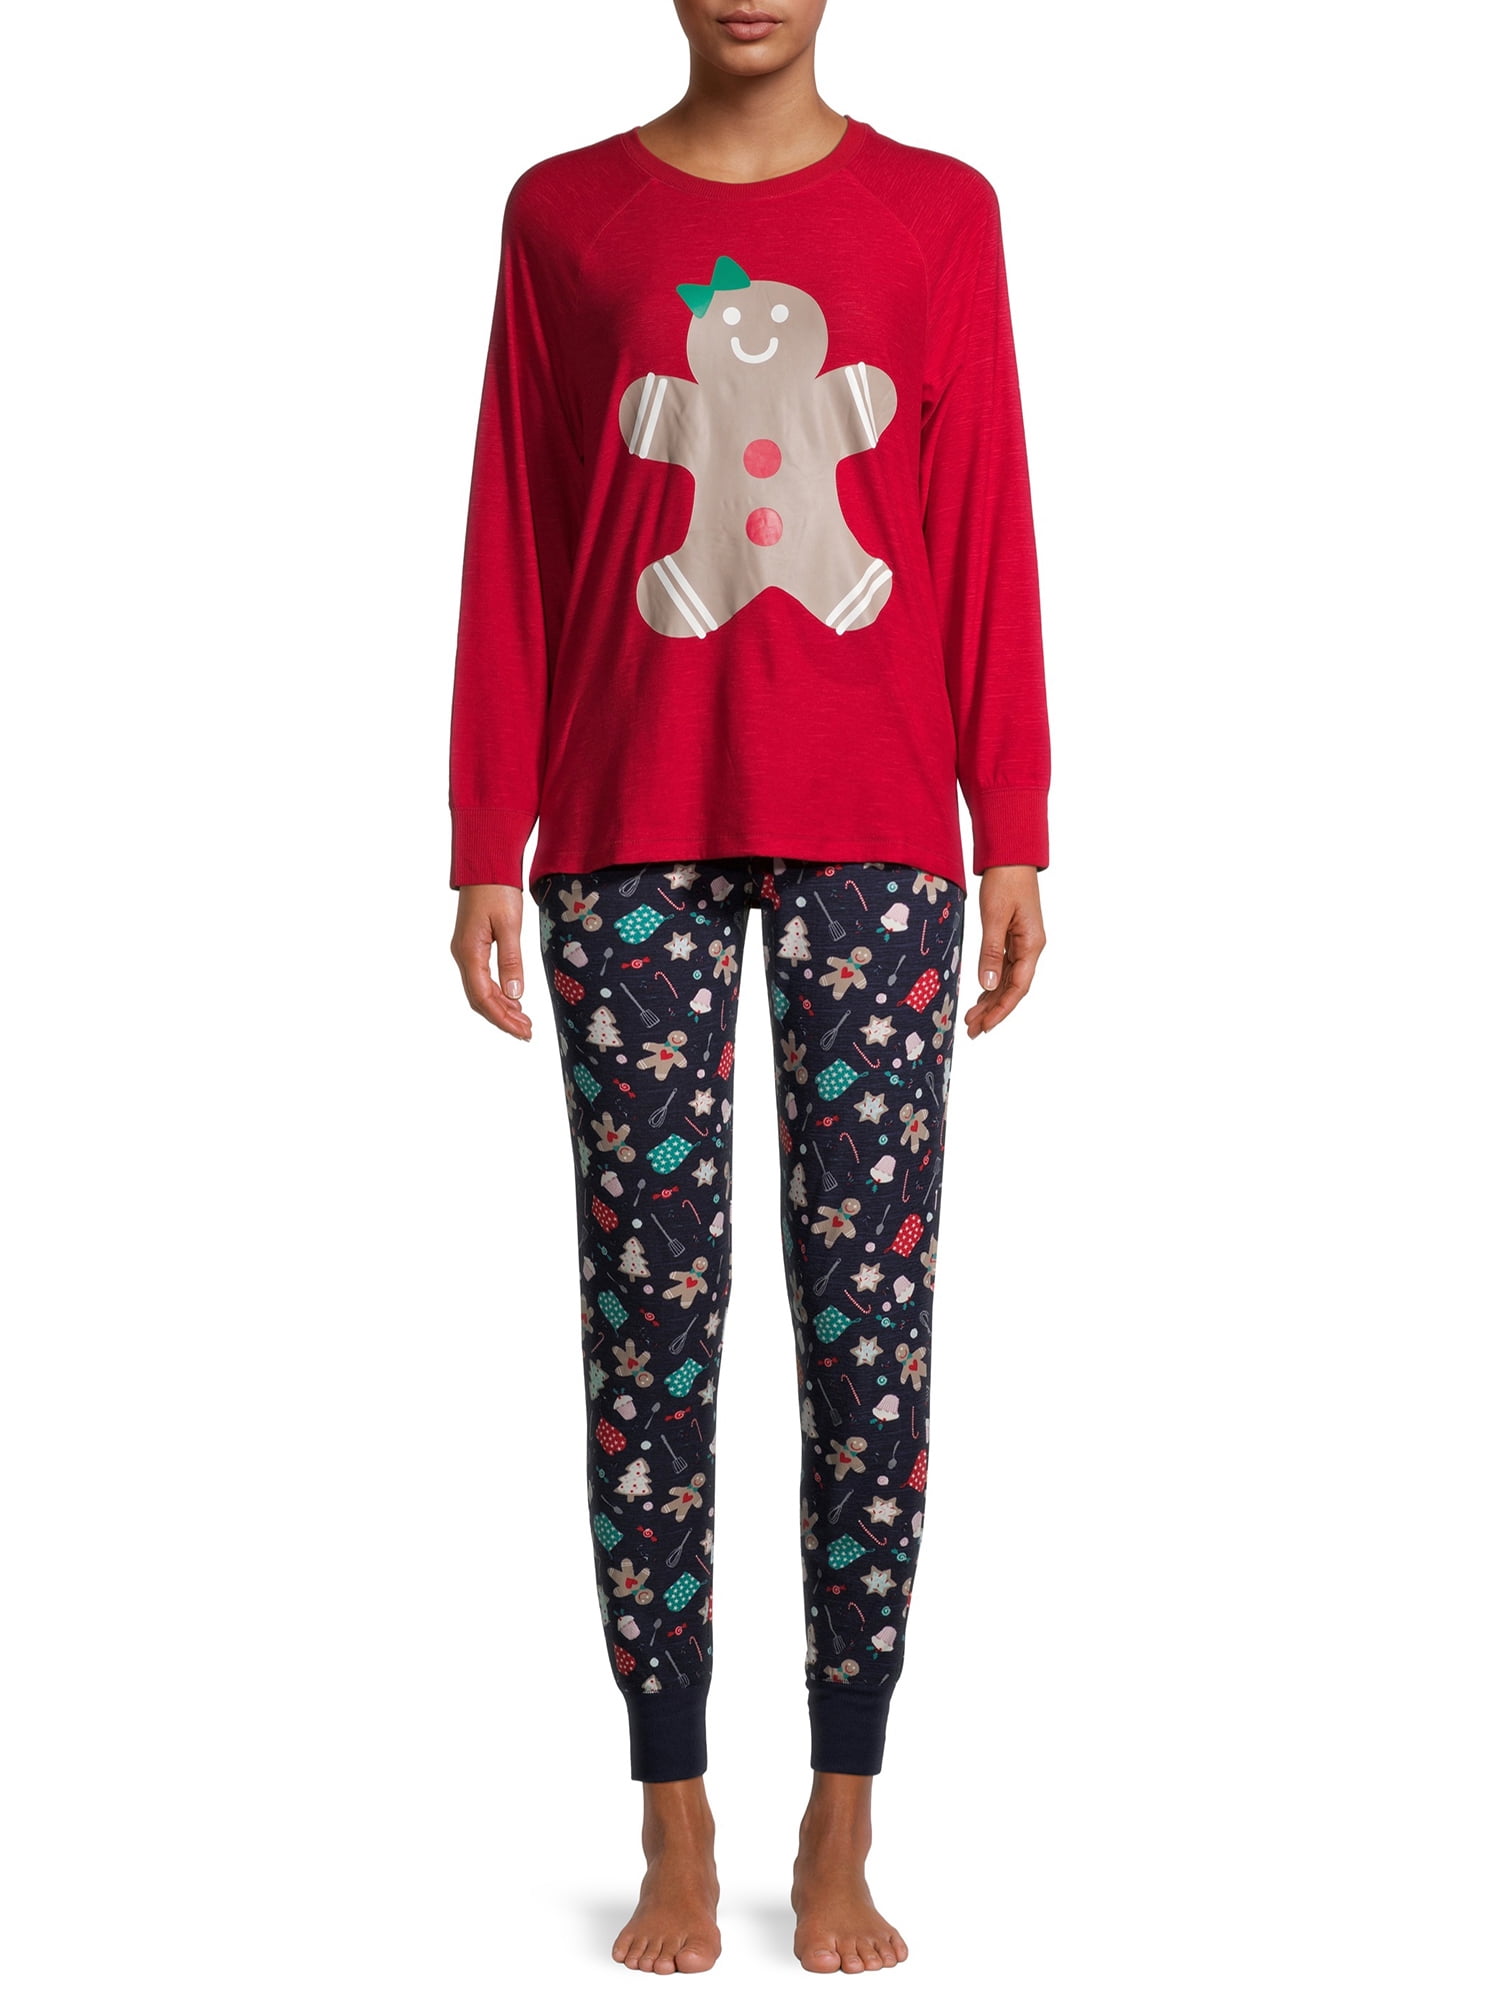 UB Christmas Gingerbread Matching Family Pajama Pants